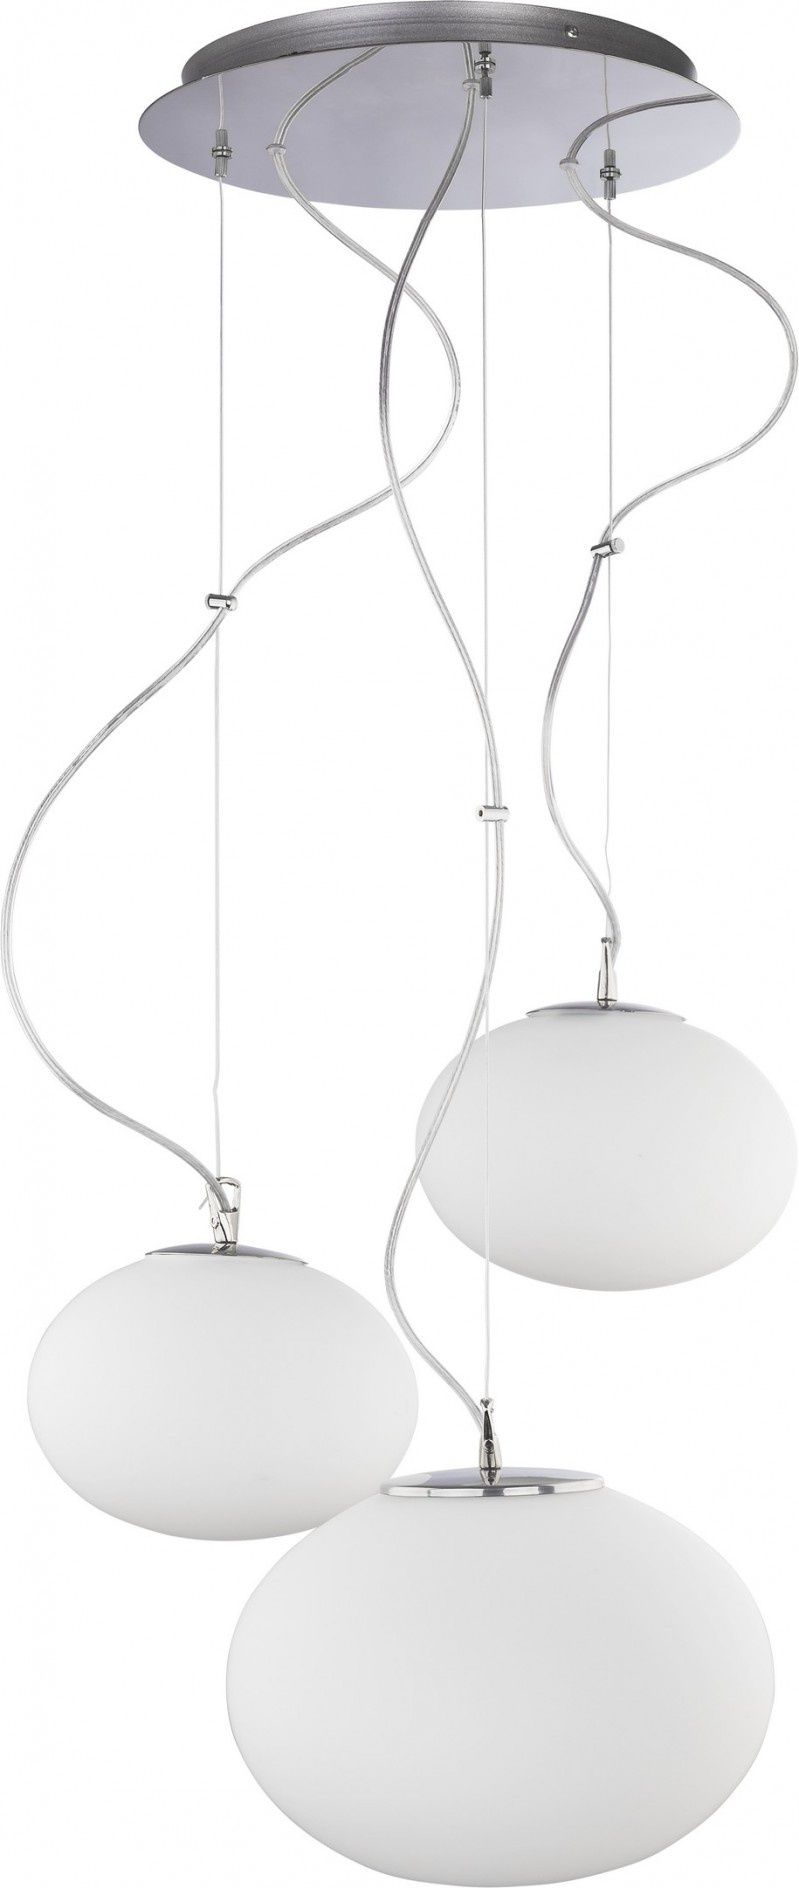 Nowość! Delikatne niczym chmurka - kolekcja designerskich lamp NUAGE marki Nowodvorski Lighting